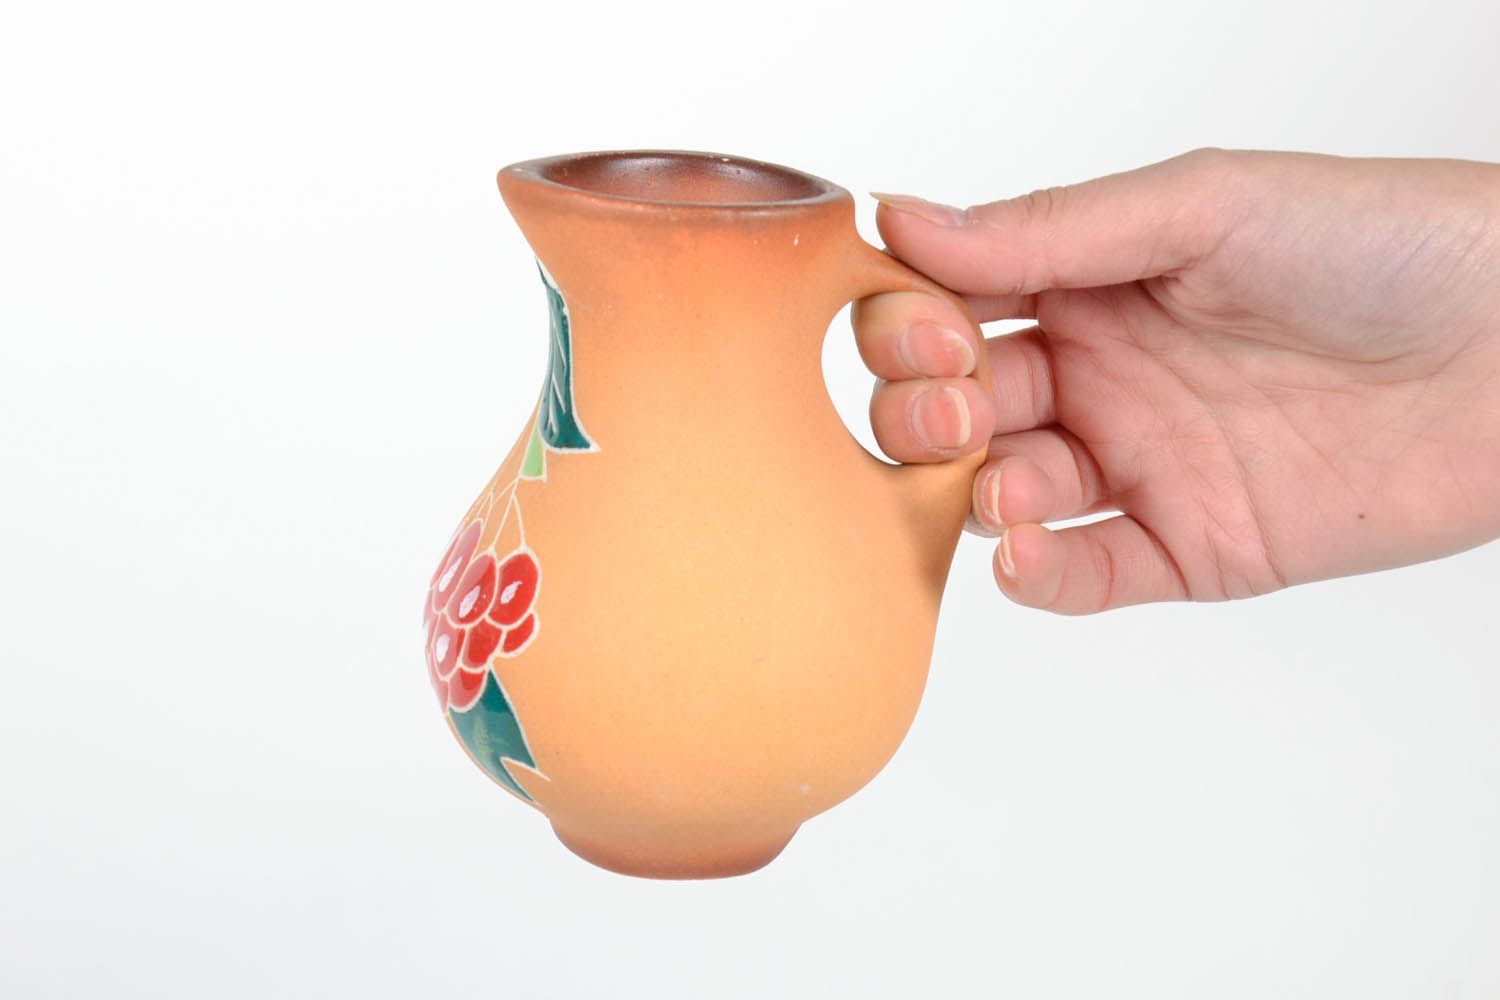 25 oz handmade ceramic water or mil or juice pitcher jug in beige color floral design 0,56 lb photo 2